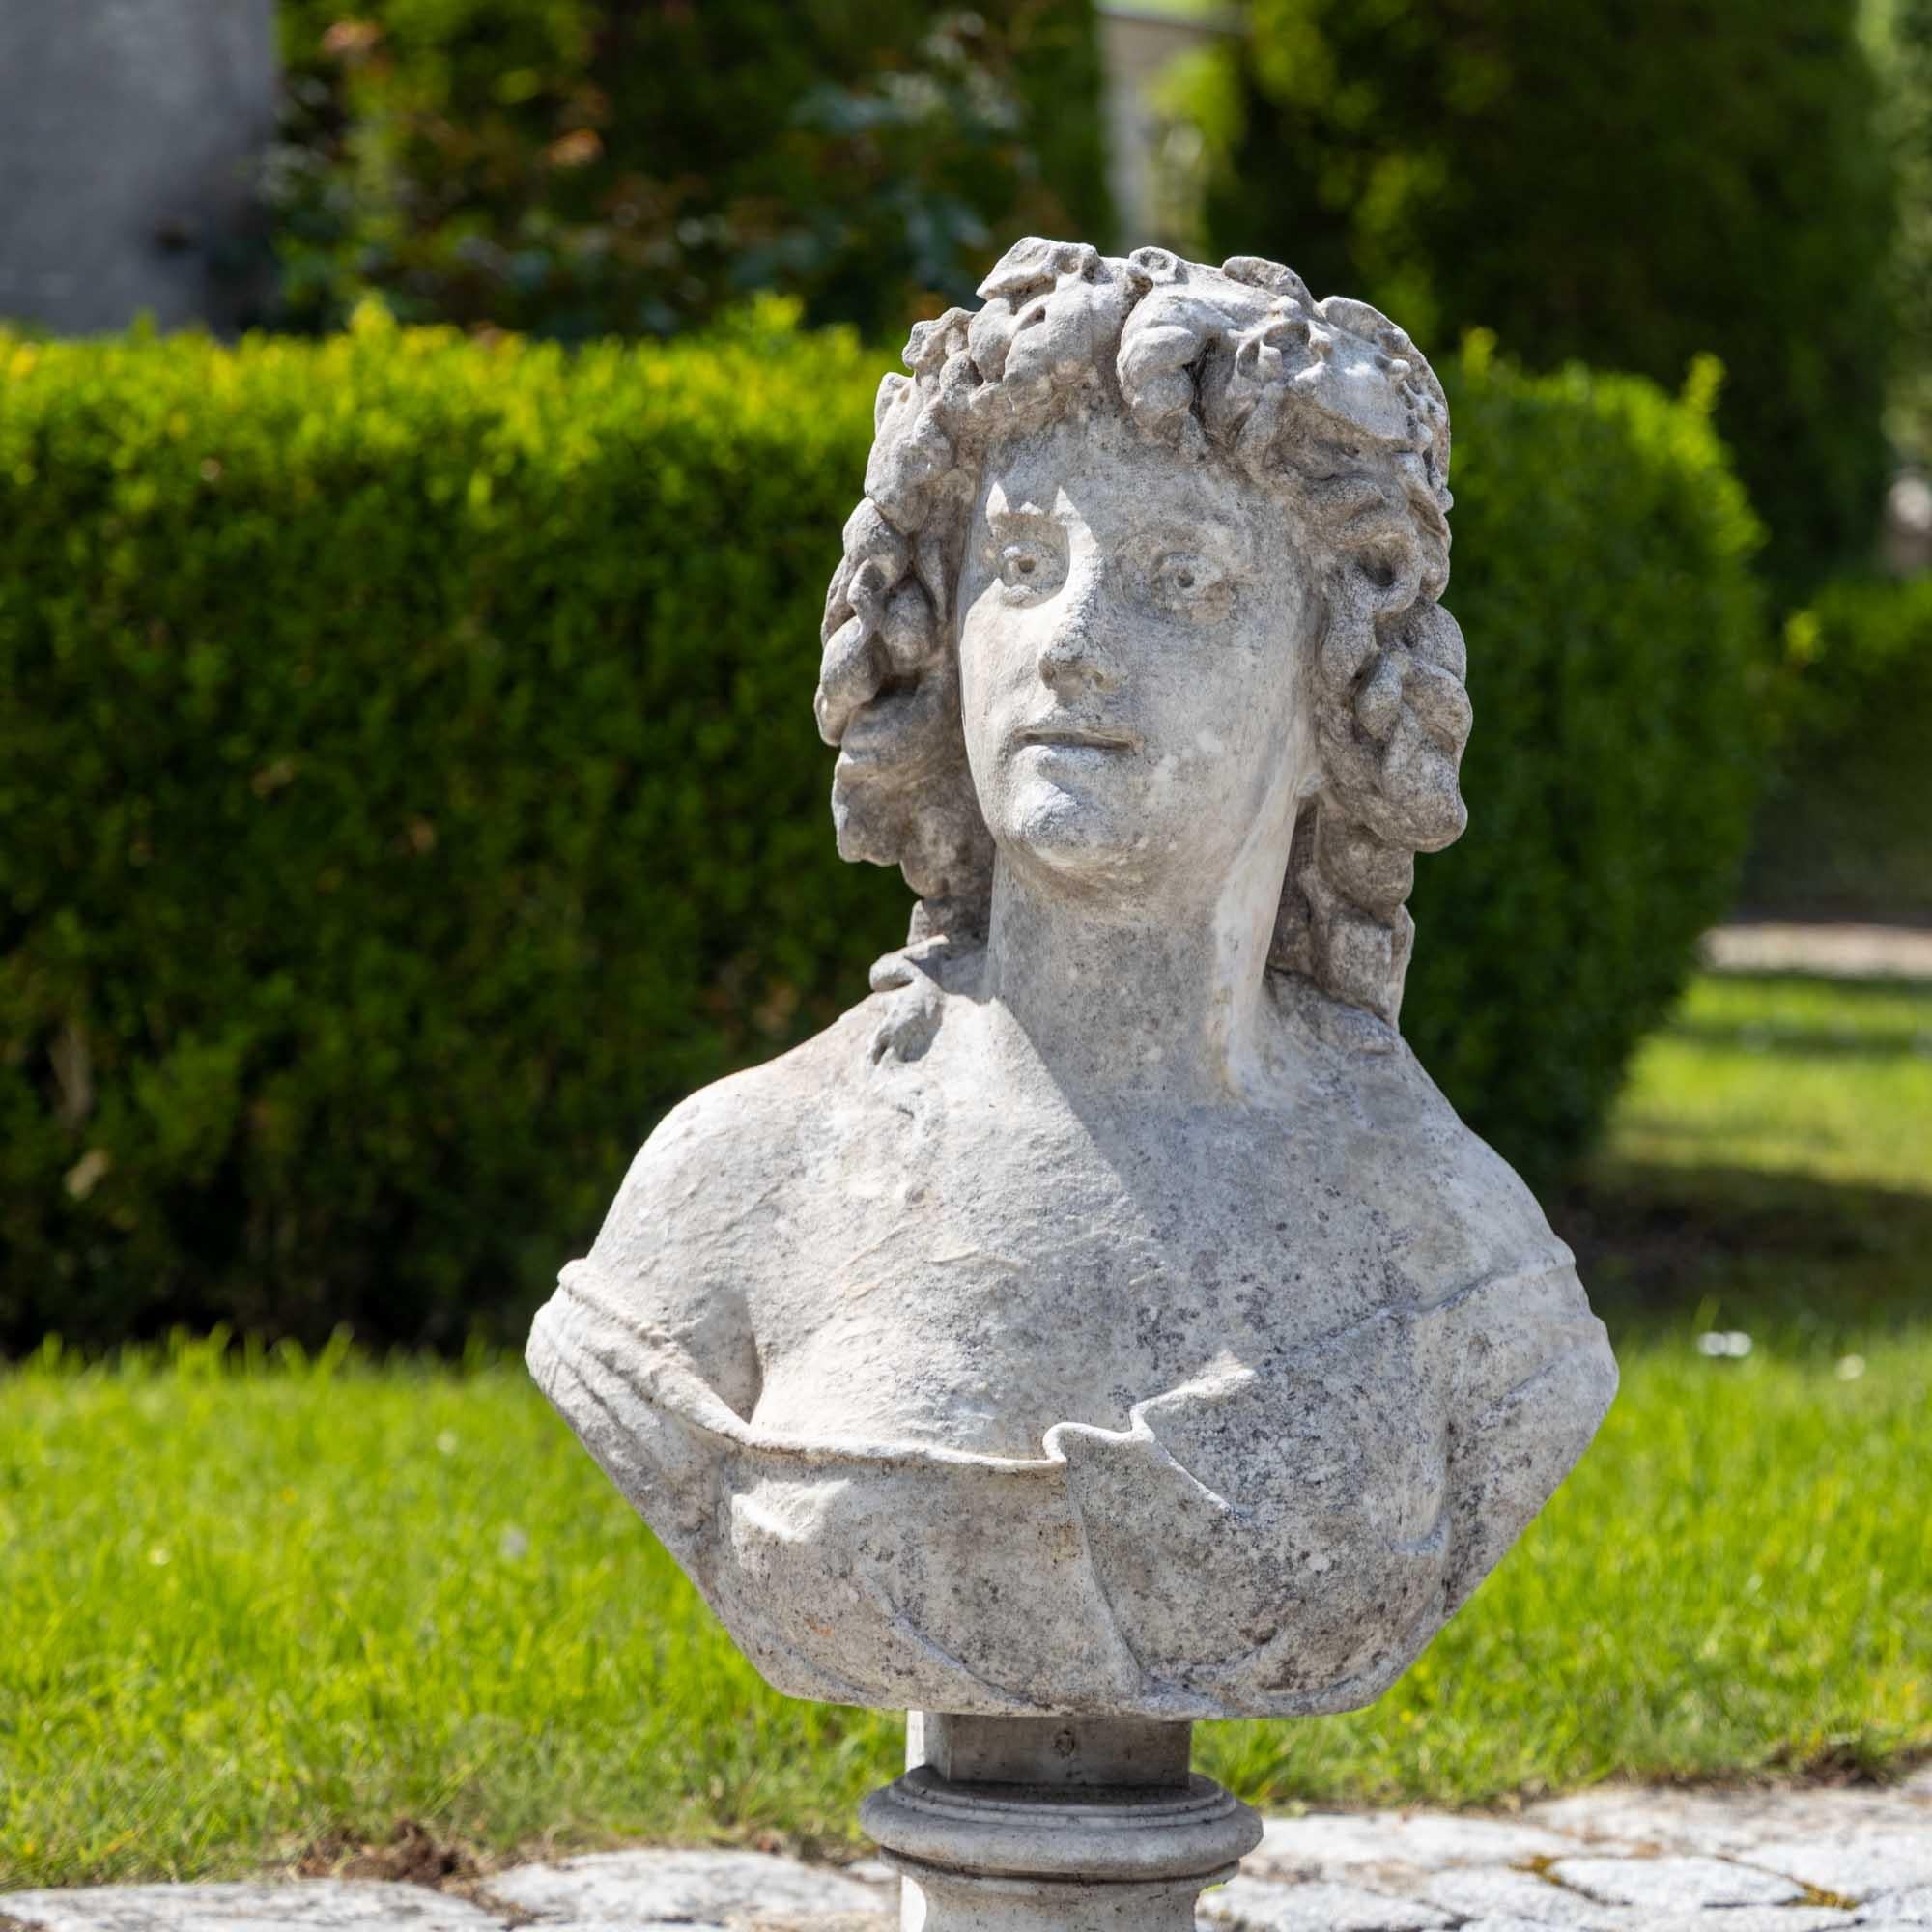 Buste en marbre sculpté à la main représentant une femme avec des feuilles de vigne dans ses cheveux bouclés et des vêtements amples. Le buste présente des signes d'altération et un caractère légèrement délavé.